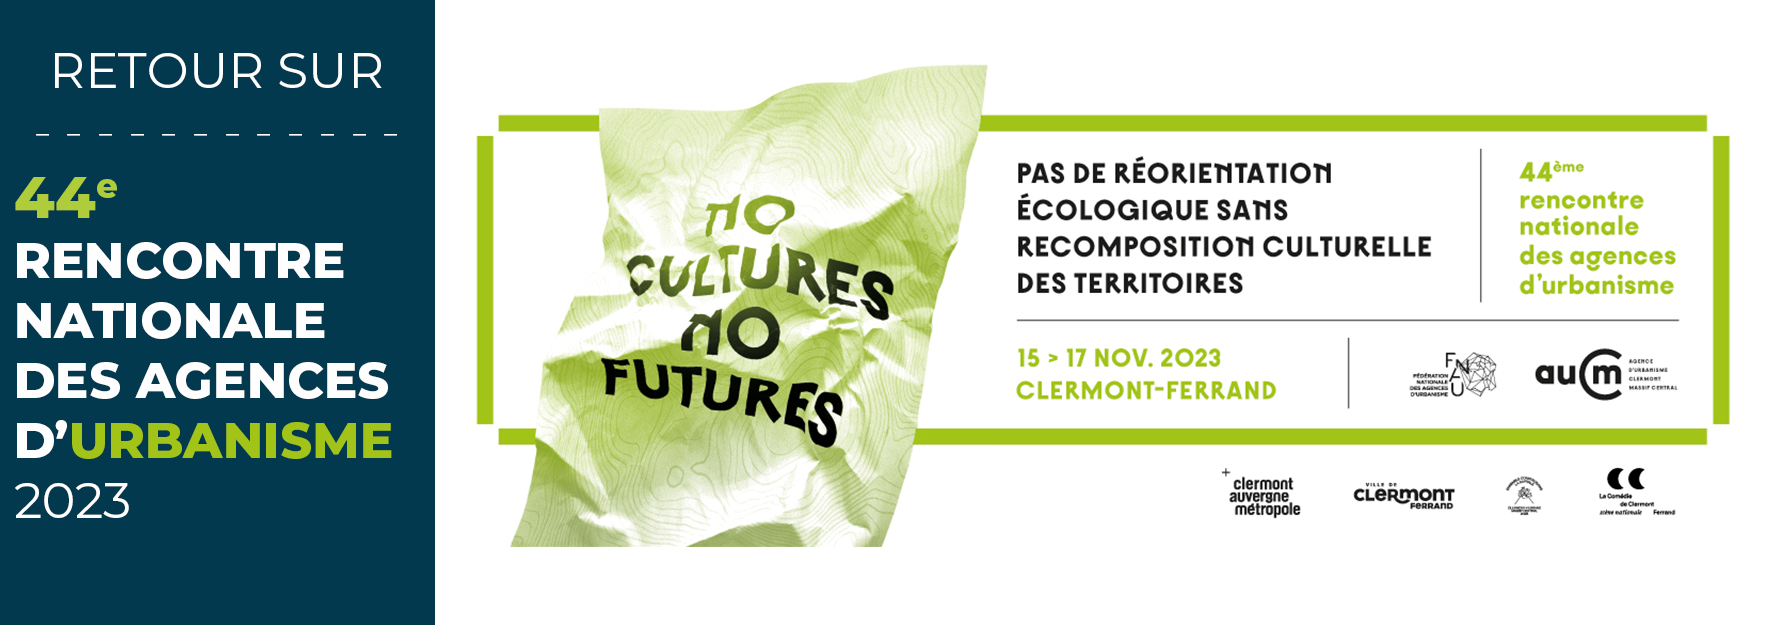 RETOUR SUR LA 44E RENCONTRE DES AGENCES D’URBANISME  / « No cultures, no futures »